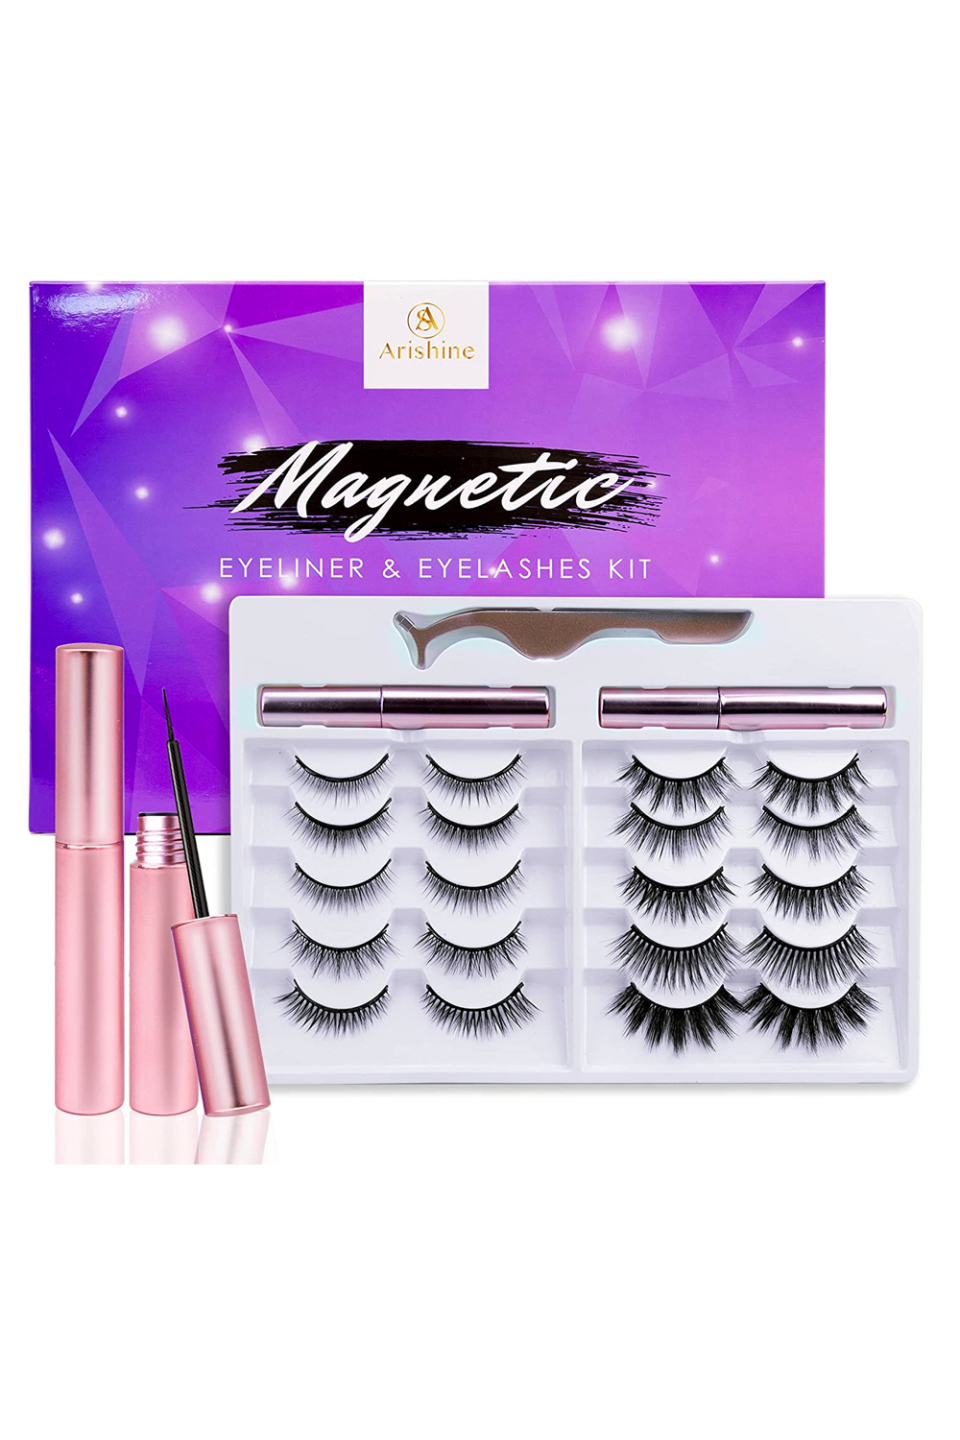 Arishine Magnetic Eyelashes with Eyeliner Kit